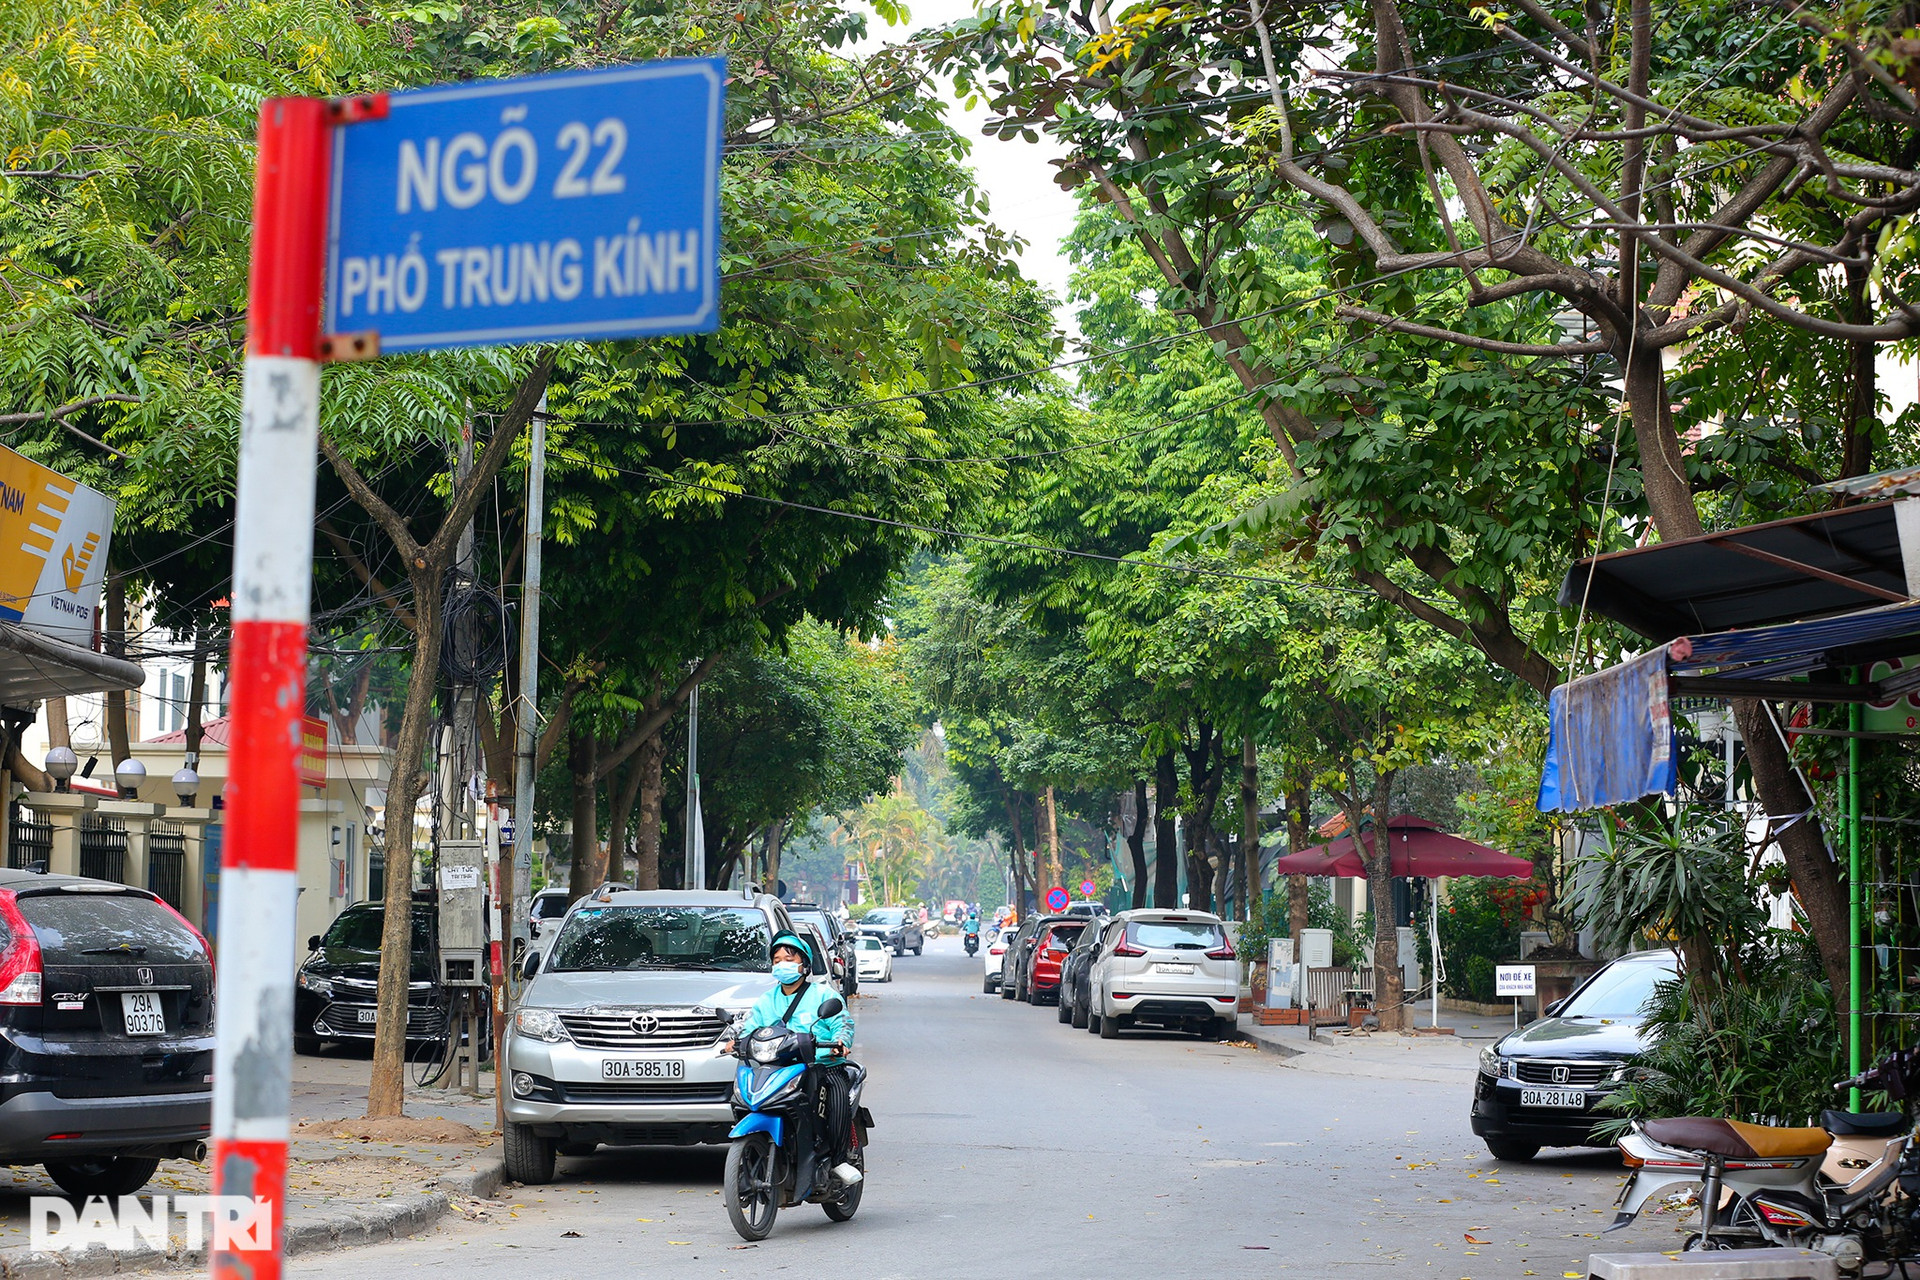 Cận cảnh 2 phố ở Hà Nội vừa được đặt tên nhà thơ Lưu Quang Vũ và Xuân Quỳnh - 3